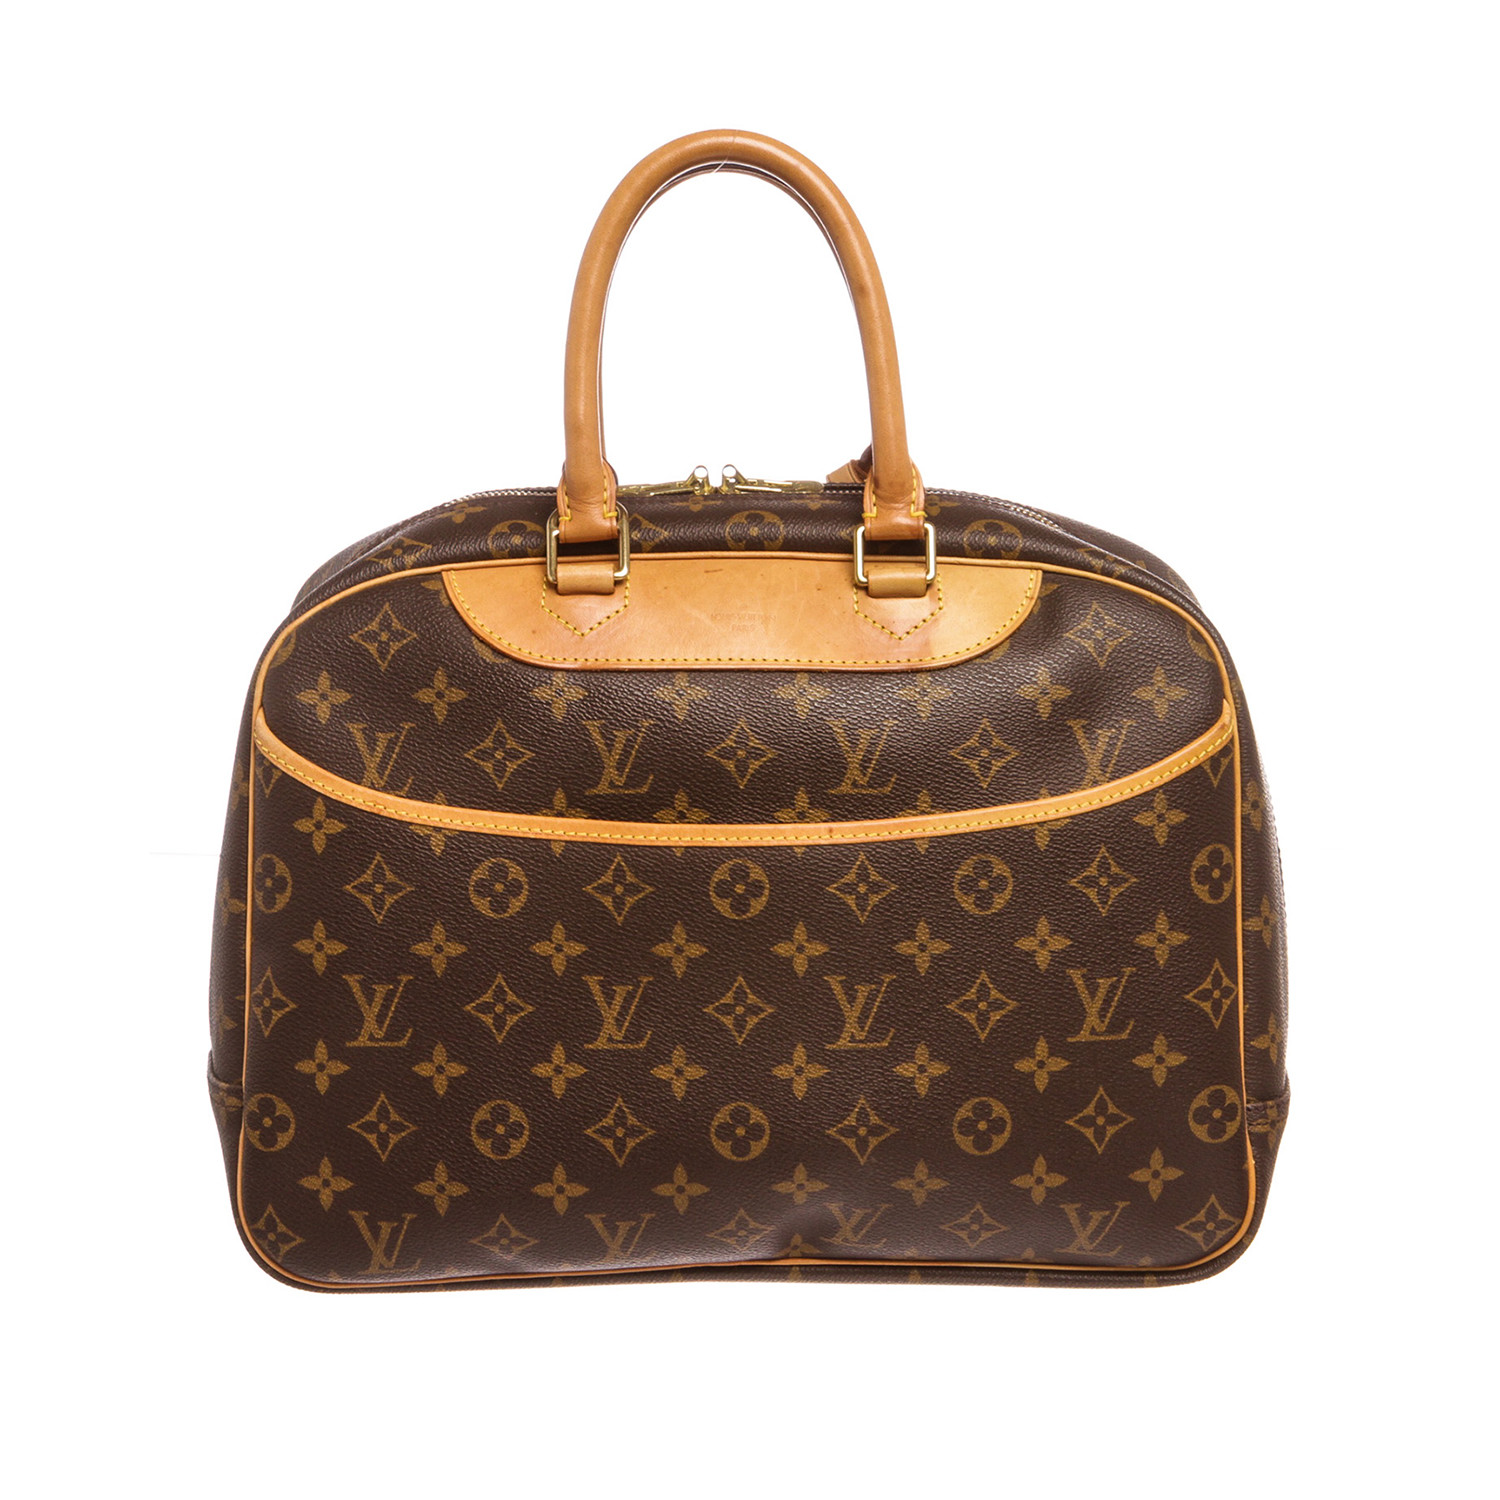 Sold at Auction: Louis Vuitton, LOUIS VUITTON Pochette Felicie, M 61276